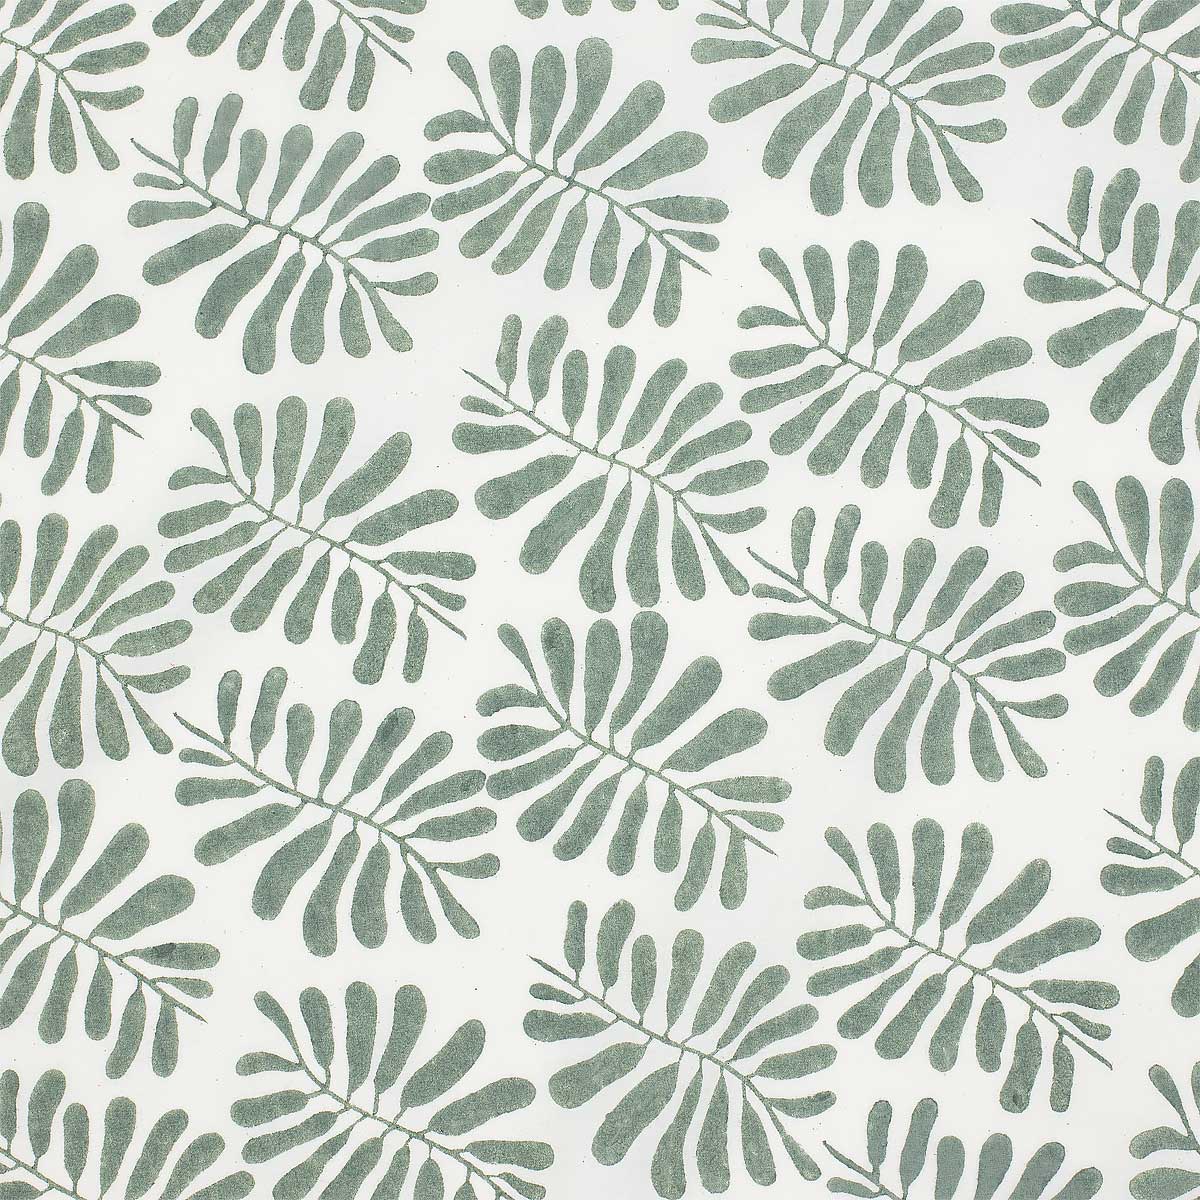 LEAF Fabric, grey/green